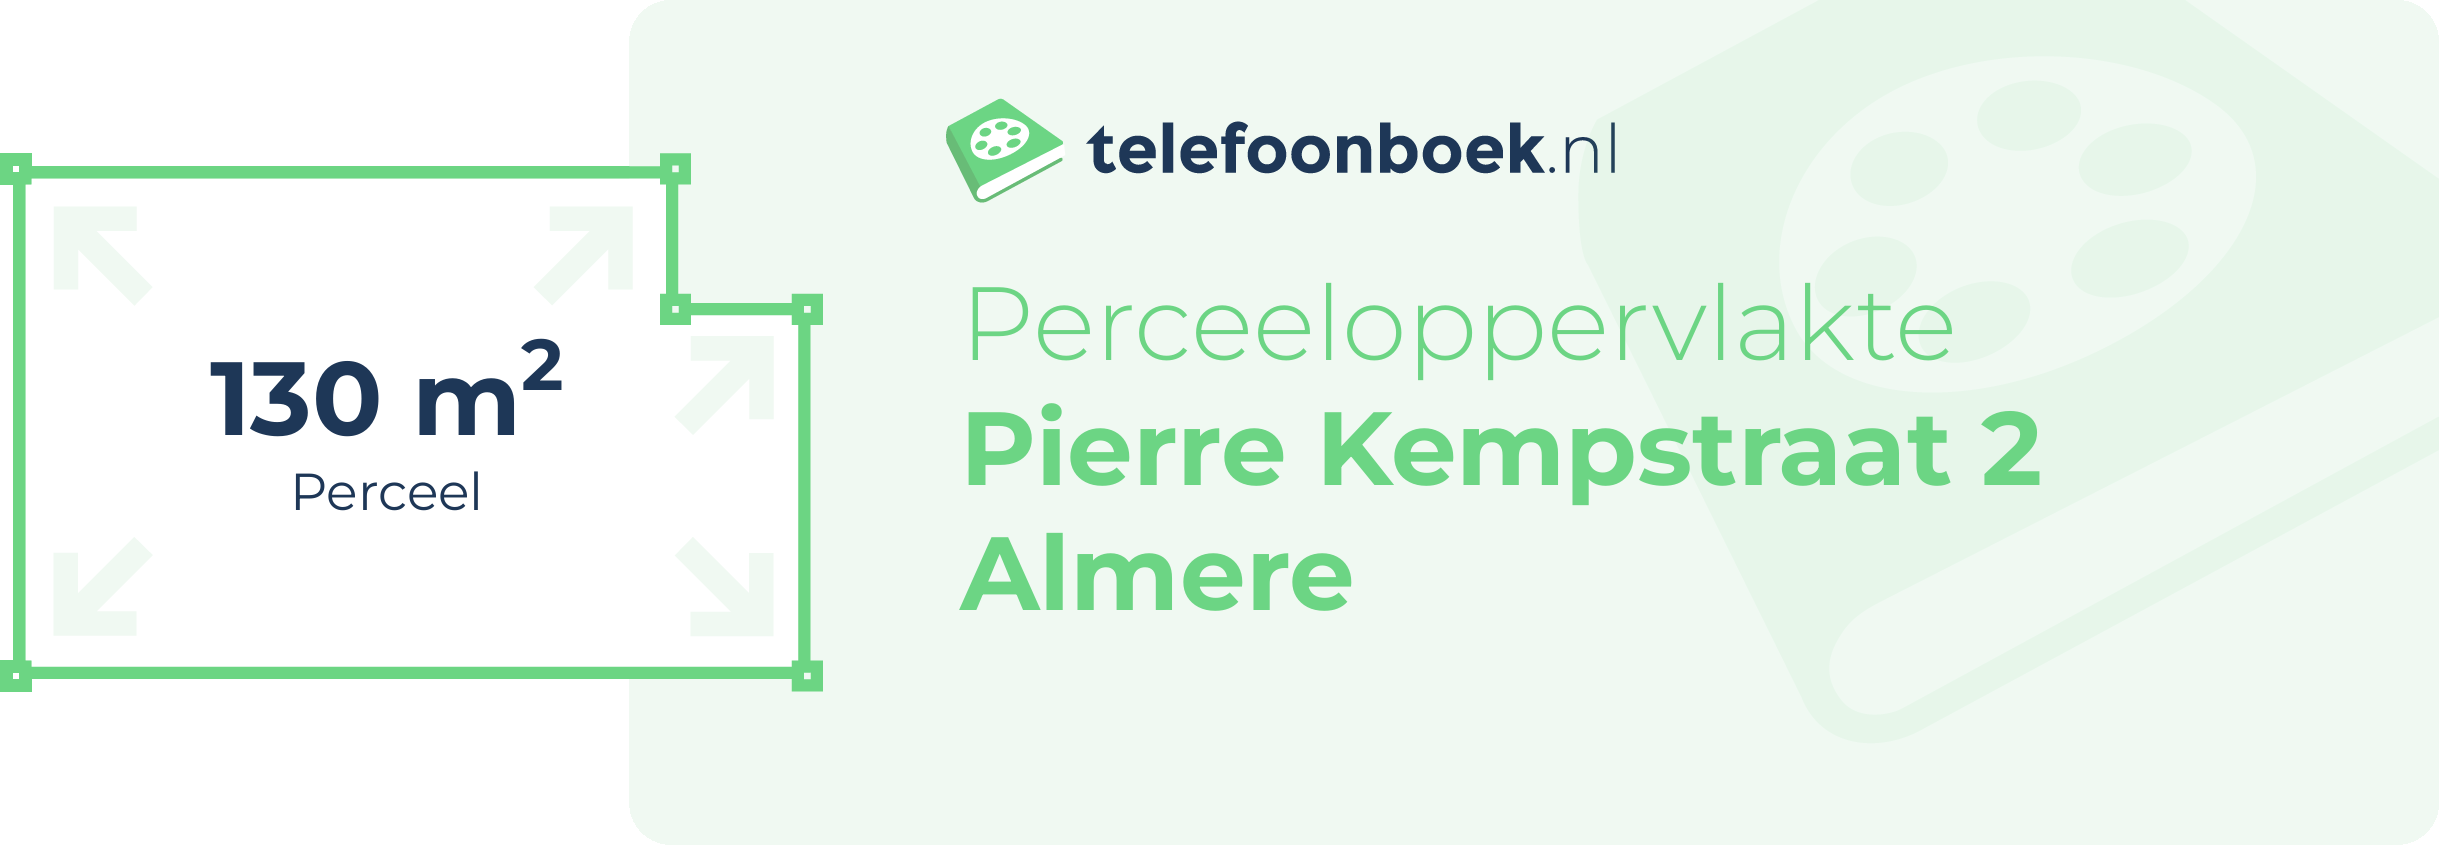 Perceeloppervlakte Pierre Kempstraat 2 Almere